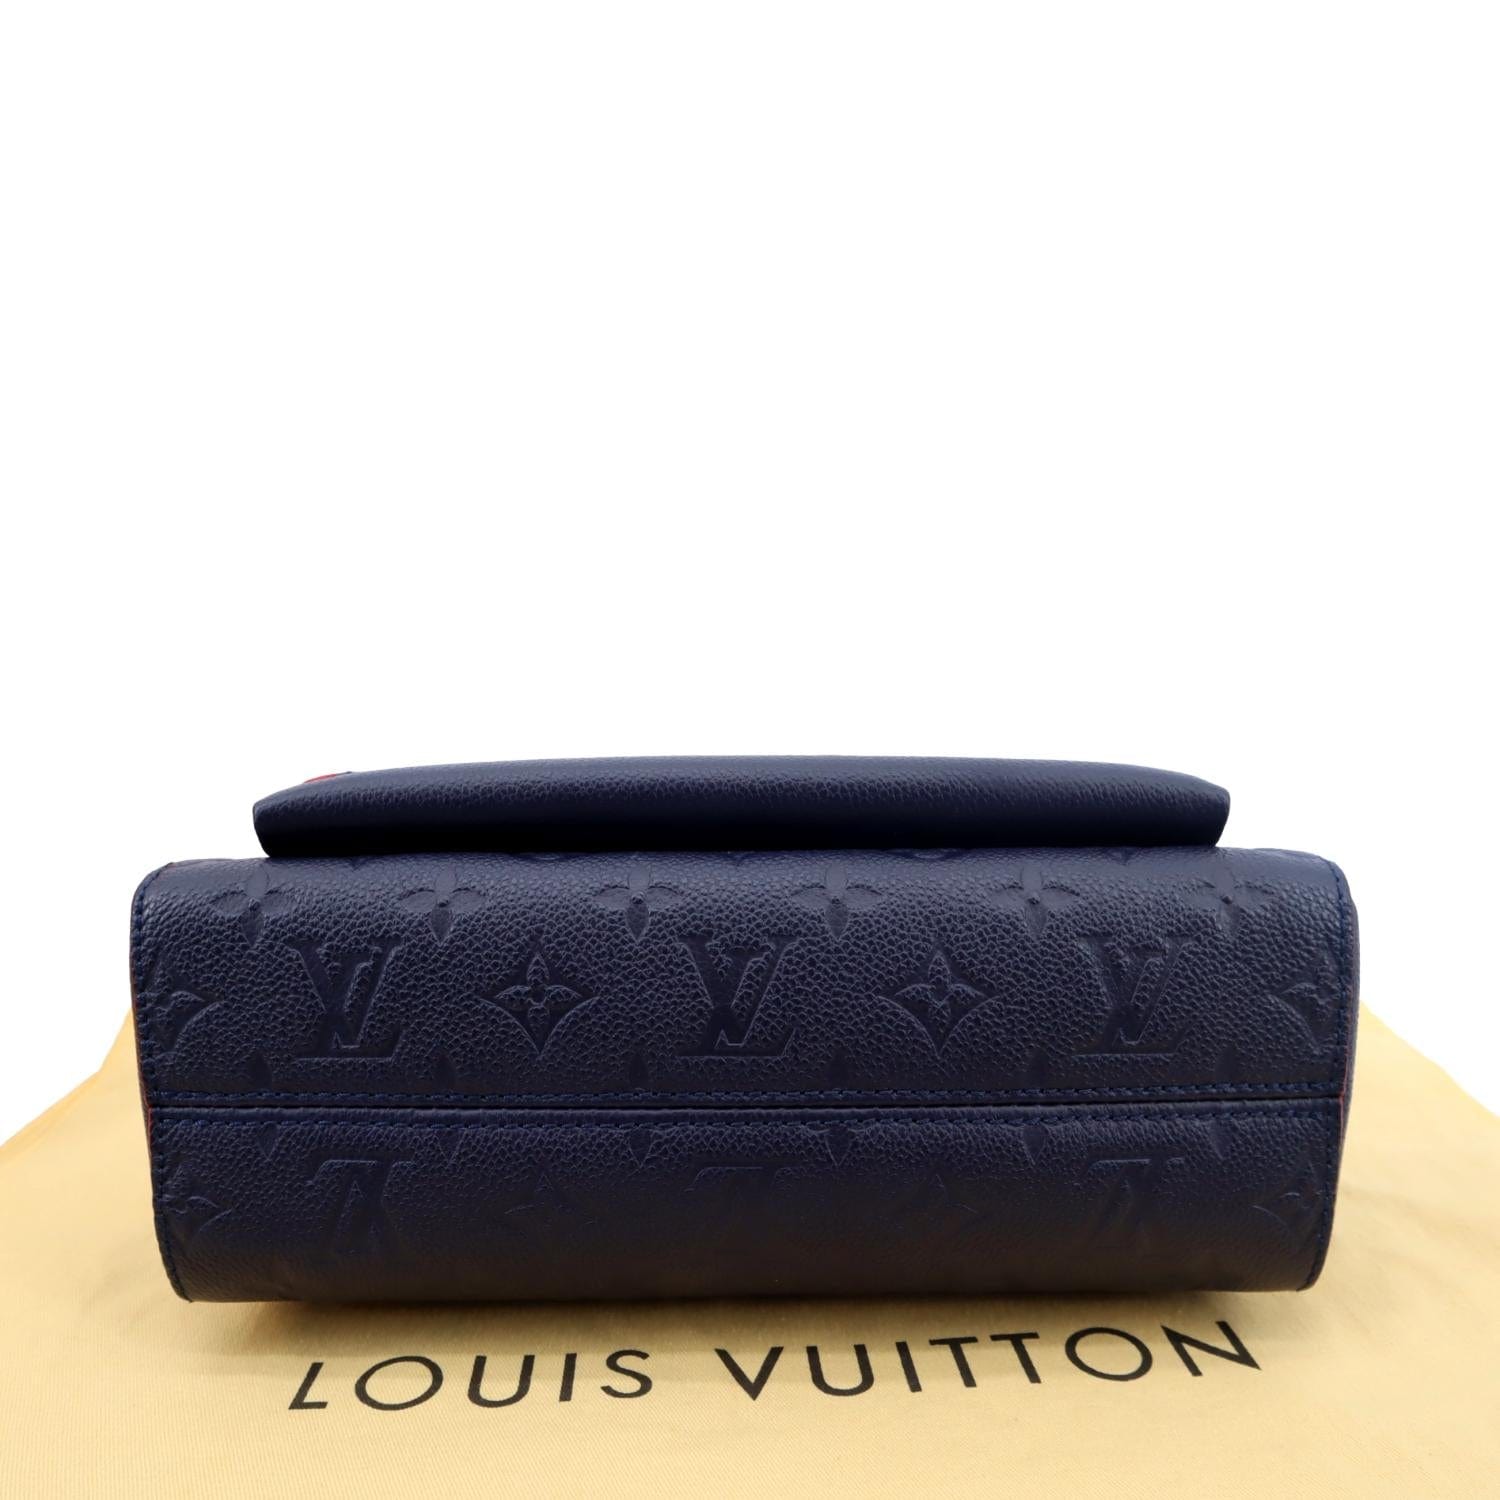 Louis Vuitton Vavin PM, Tourterelle Empreinte, New in Box WA001